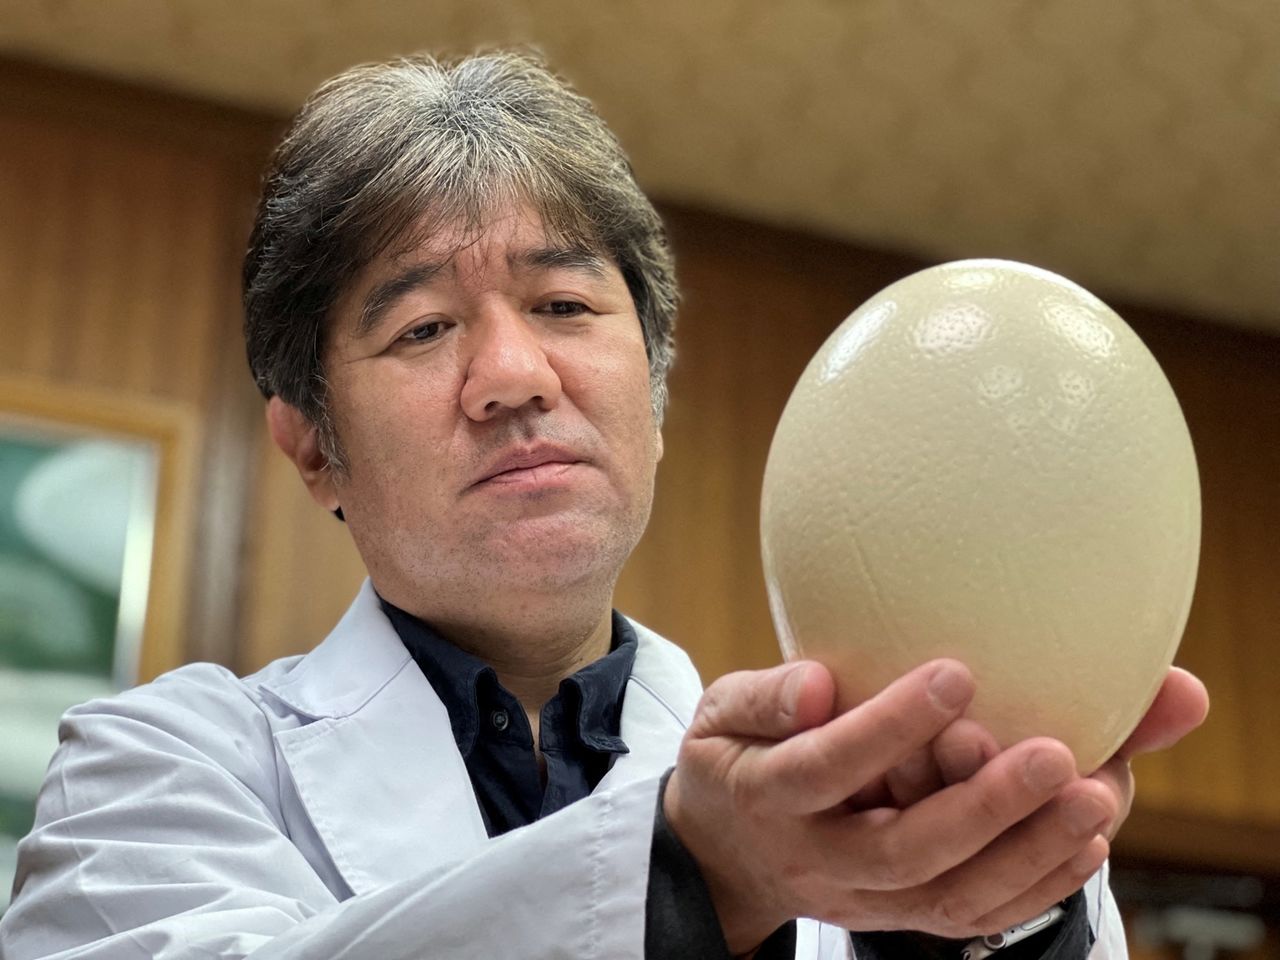 Президент Университета префектуры Киото и доктор ветеринарной медицины Цукамото Ясухиро держит страусиное яйцо в Киото, Япония, на рекламной фотографии, сделанной в августе 2021 года и опубликованной Университетом префектуры Киото (KPU / Раздаточный материал через REUTER - ЭТО ИЗОБРАЖЕНИЕ ПРЕДОСТАВЛЕНО ТРЕТЬЕЙ СТОРОНОЙ, ОБЯЗАТЕЛЬНО УКАЗАНИЕ ИСТОЧНИКА, НЕ ДЛЯ ПЕРЕПРОДАЖИ ИЛИ АРХИВИРОВАНИЯ)